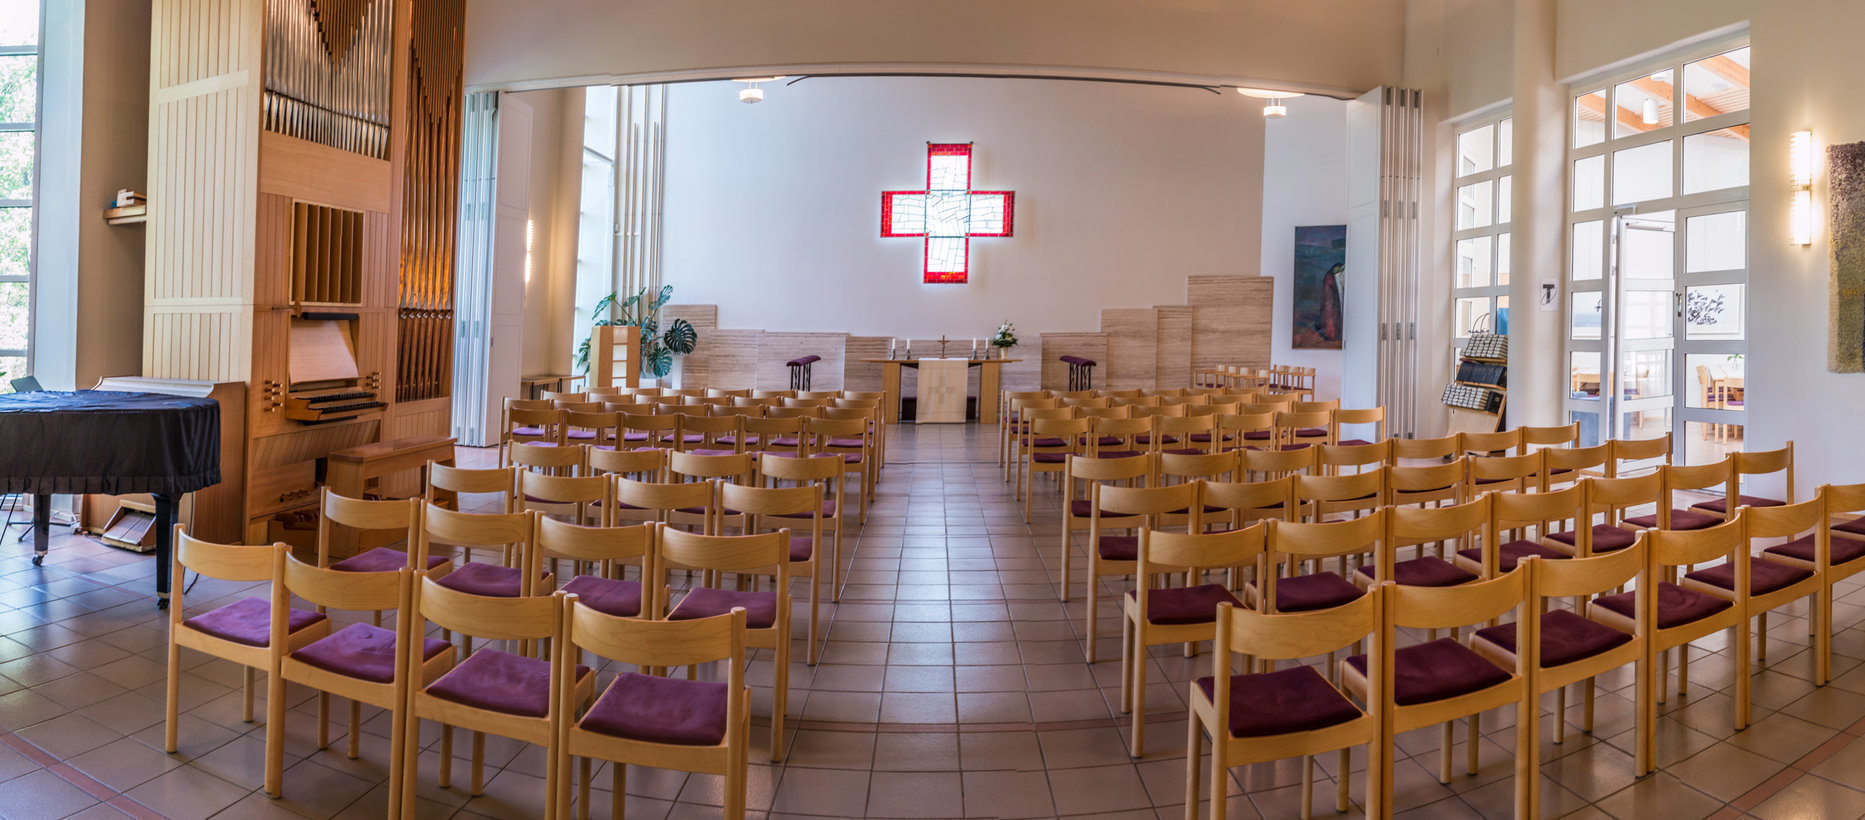 Gammelbackan seurakuntakeskuksen kirkkosali